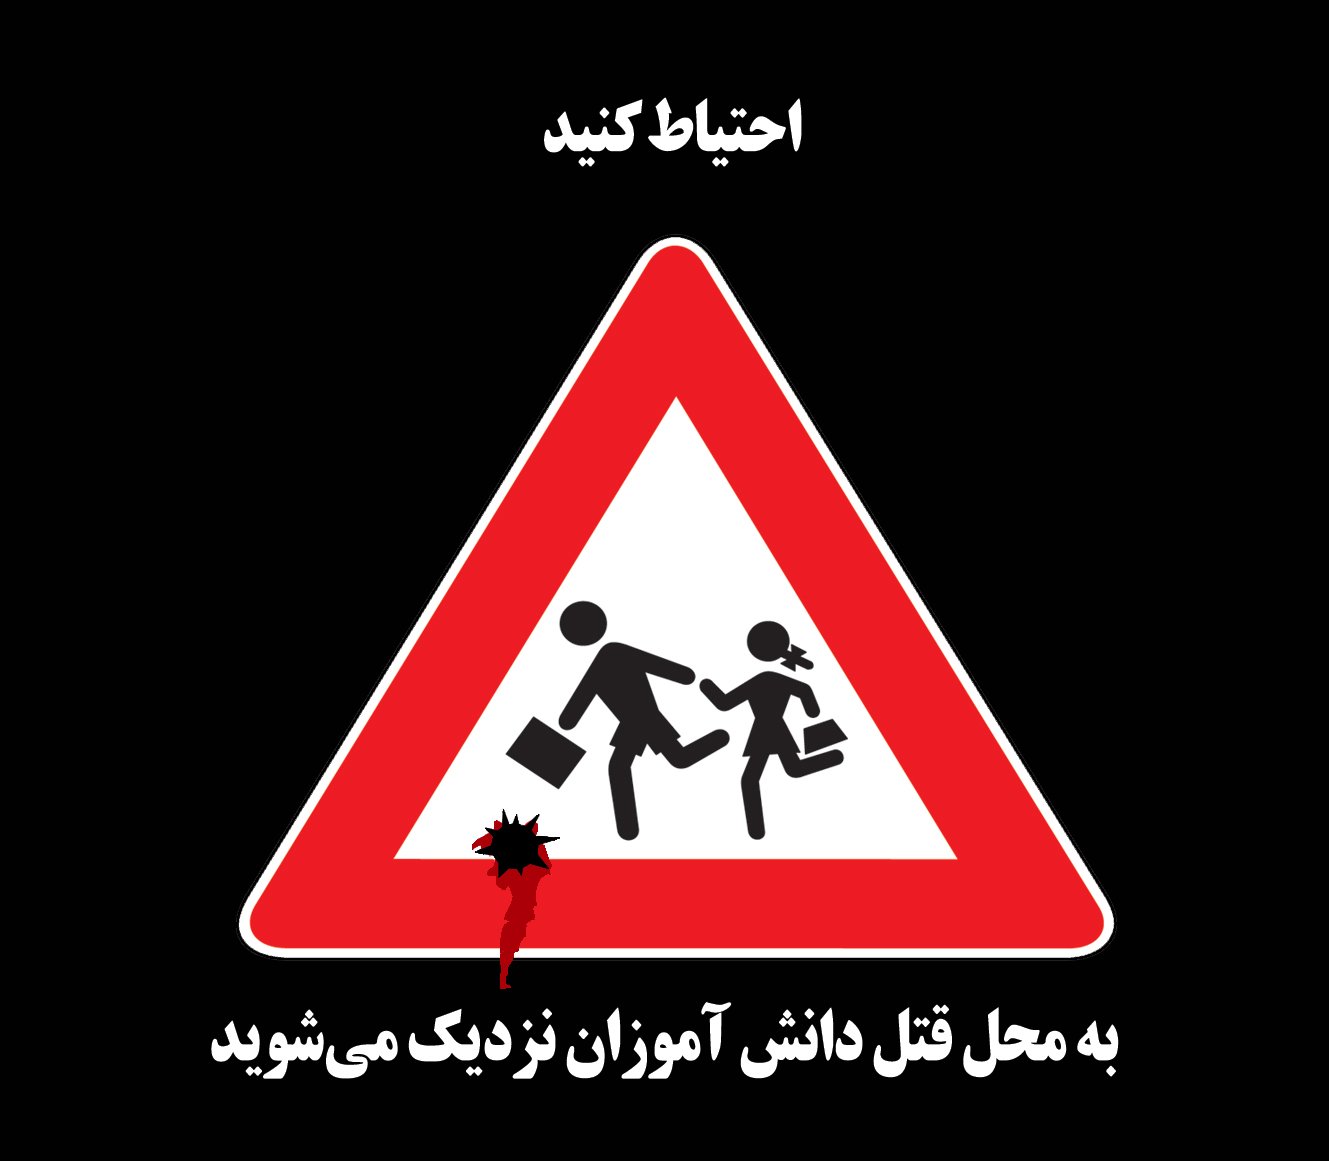 Iran Revolution Art No. Ff5p8QJXwAUvZ5S